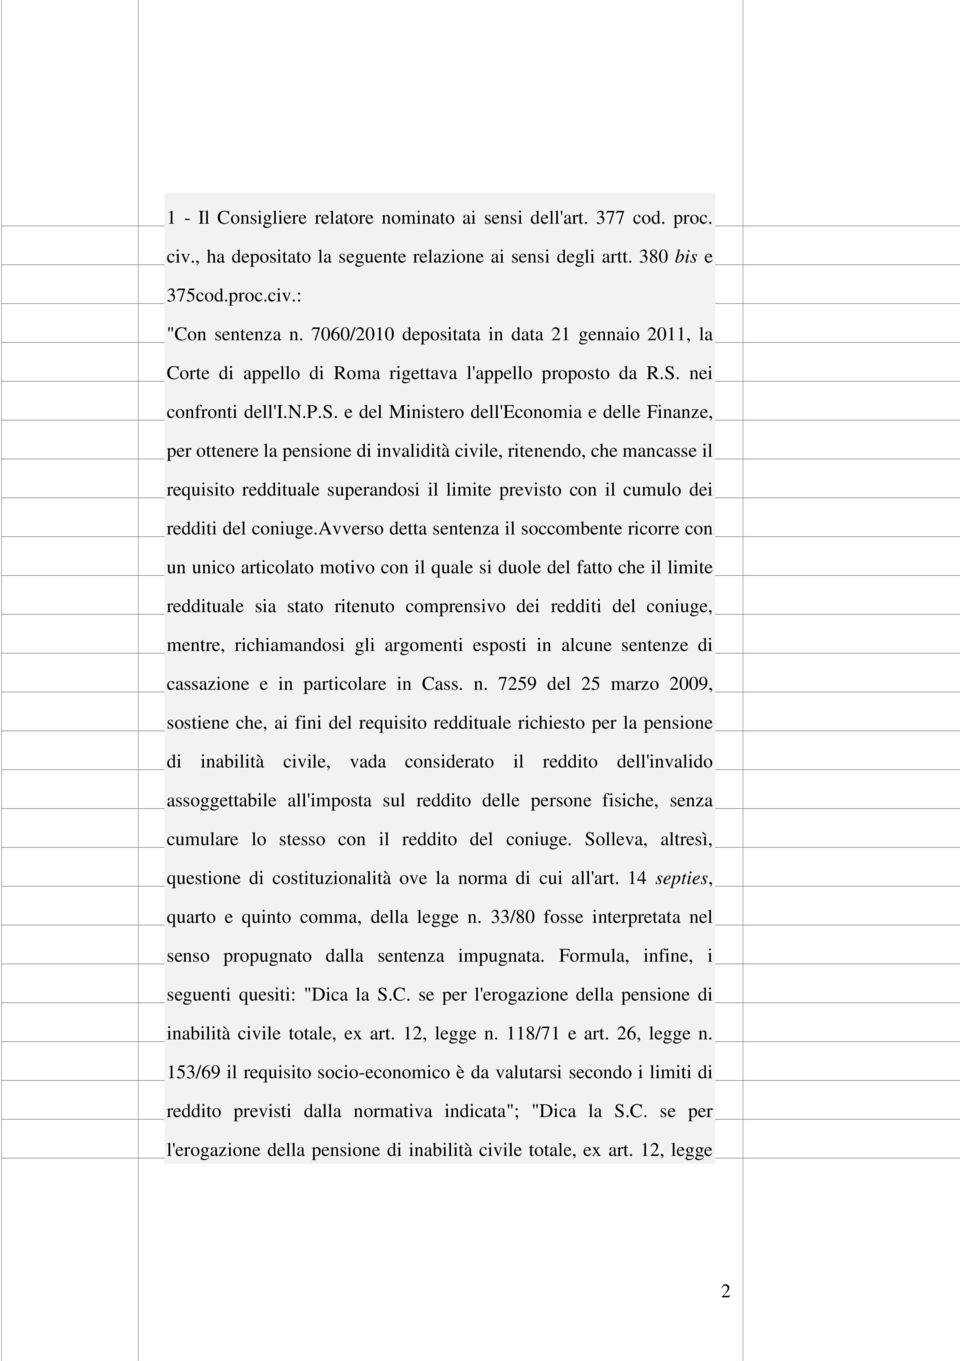 tata in data 21 gennaio 2011, la Corte di appello di Roma rigettava l'appello propost